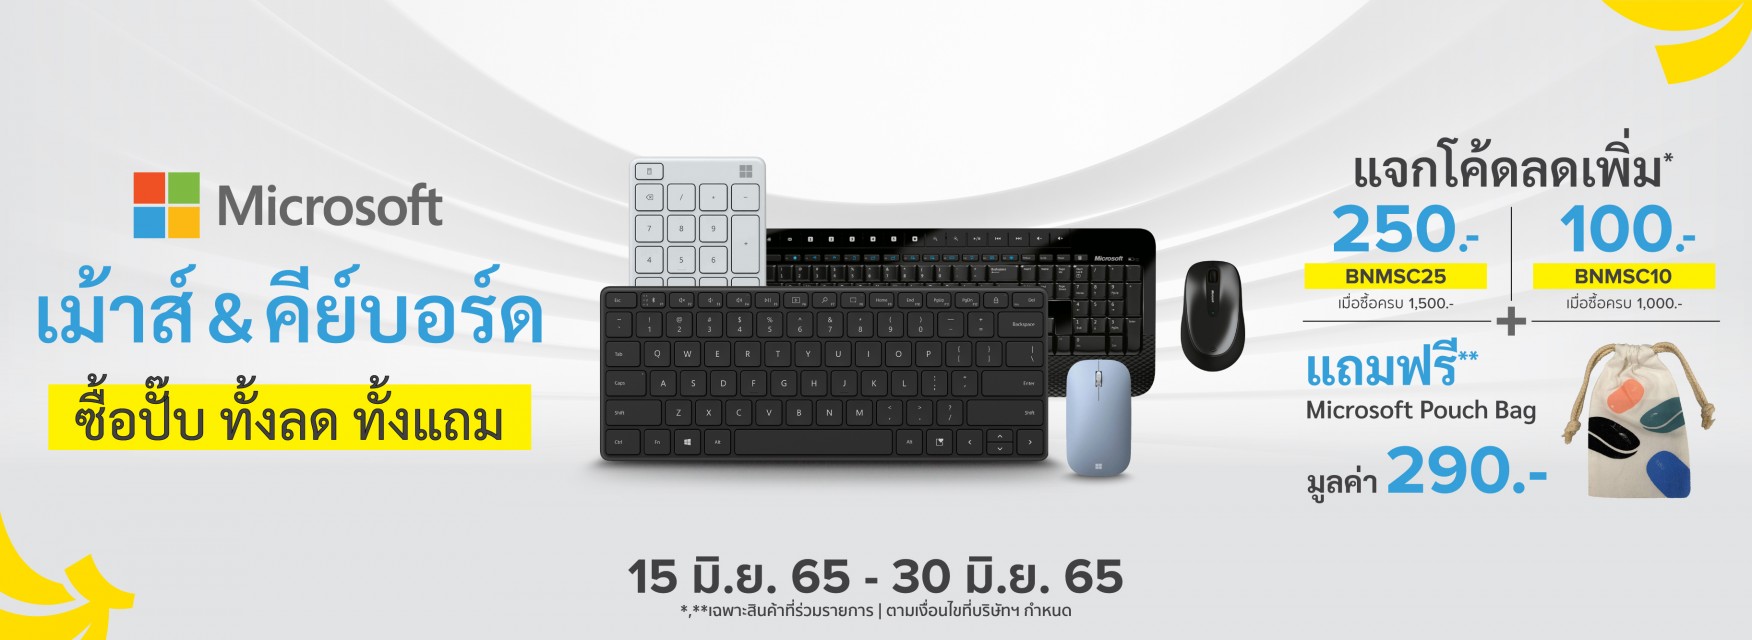 Microsoft Mouse & Keyboard